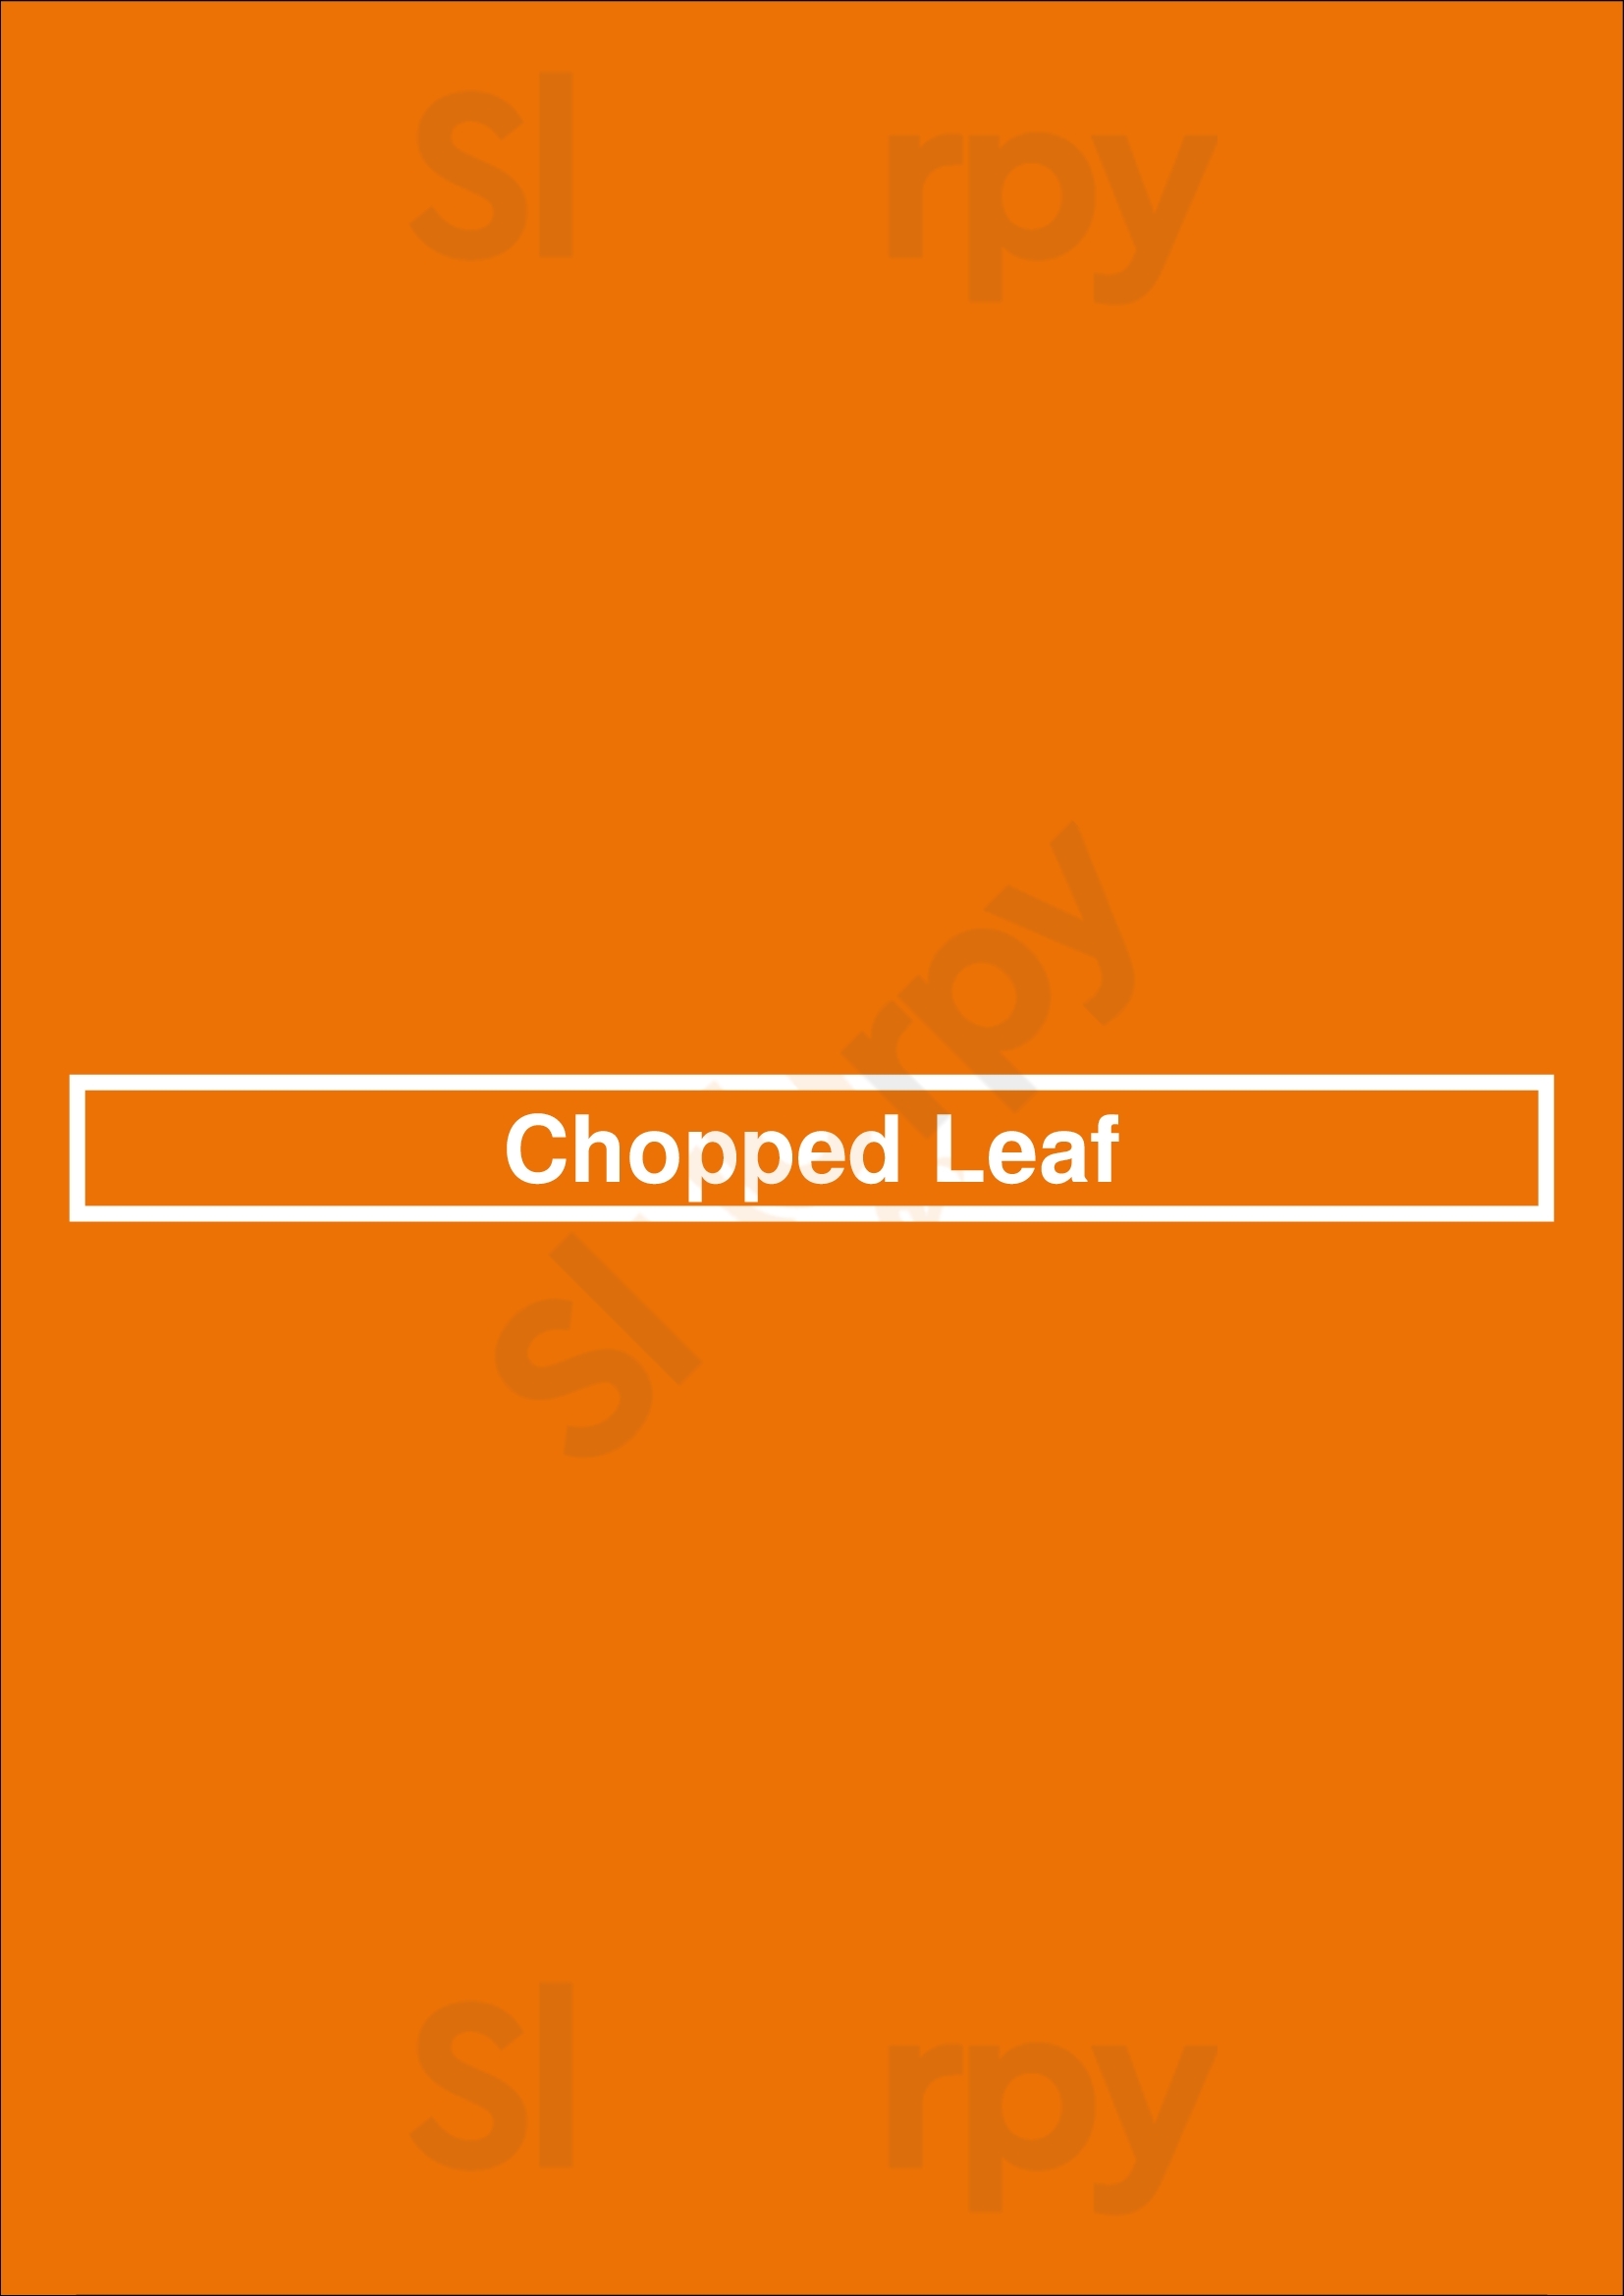 Chopped Leaf Edmonton Menu - 1